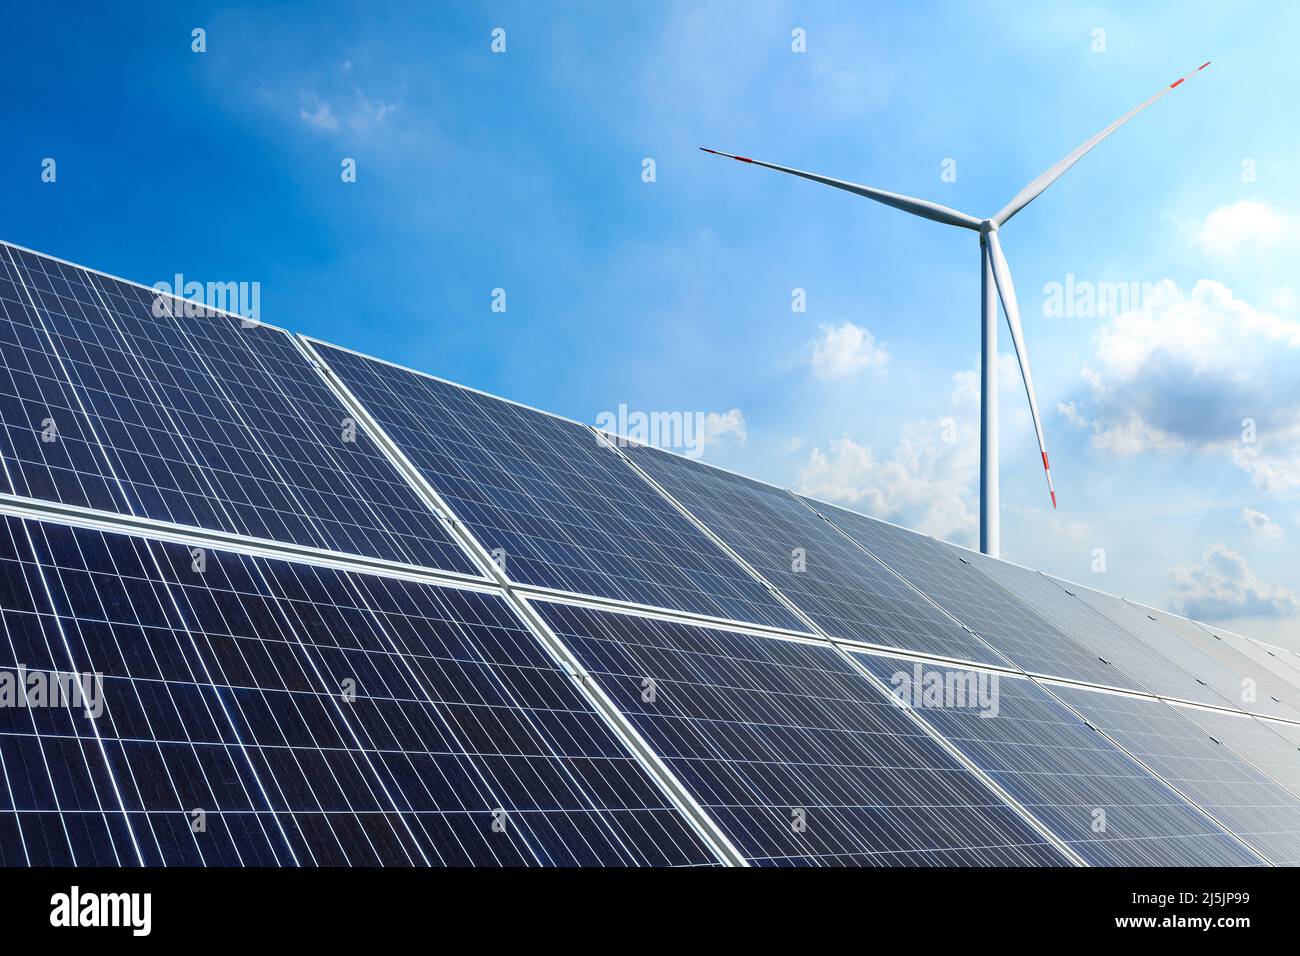 Sonnenkollektoren und Windkraftanlagen Landschaft unter blauem Himmel. Konzept für grüne Energie. Stockfoto